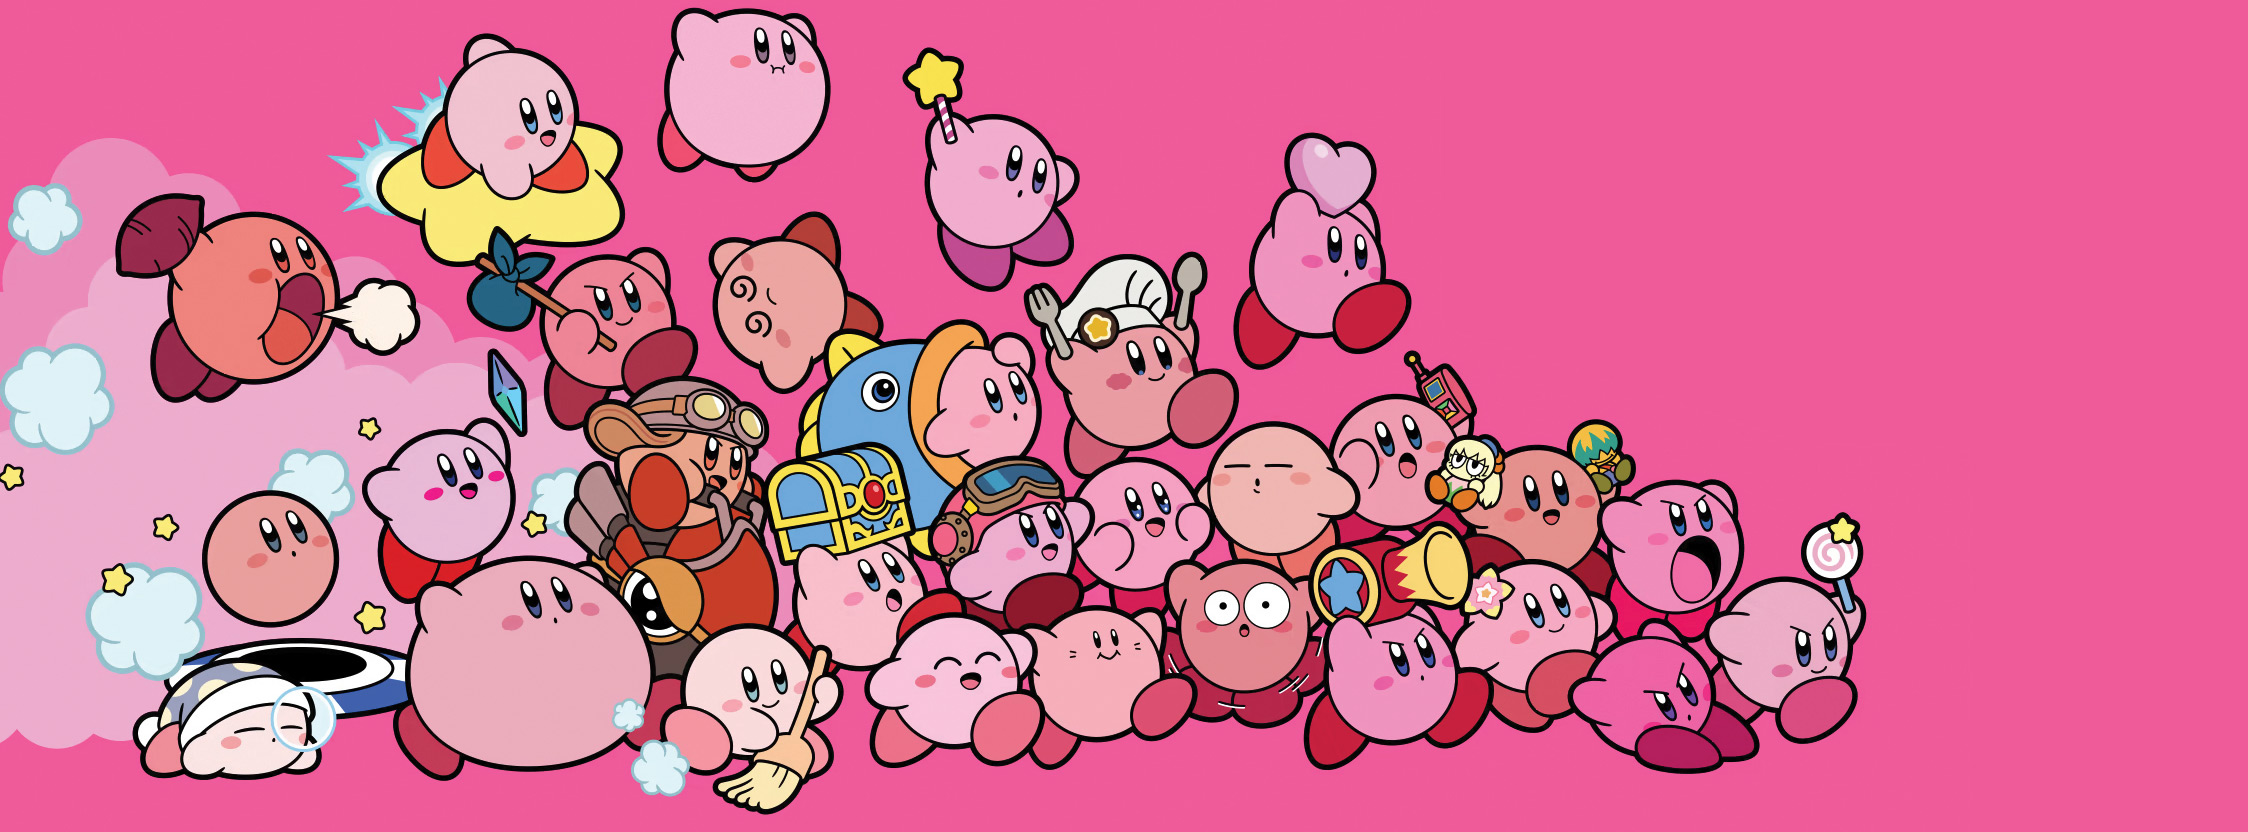 Thật tuyệt vời khi được tìm hiểu lịch sử của nhân vật đáng yêu Kirby! Từ khi ra đời đến giờ đây, Kirby đã trải qua những cuộc phiêu lưu thật đầy thử thách và để lại những ấn tượng đáng nhớ cho người hâm mộ.